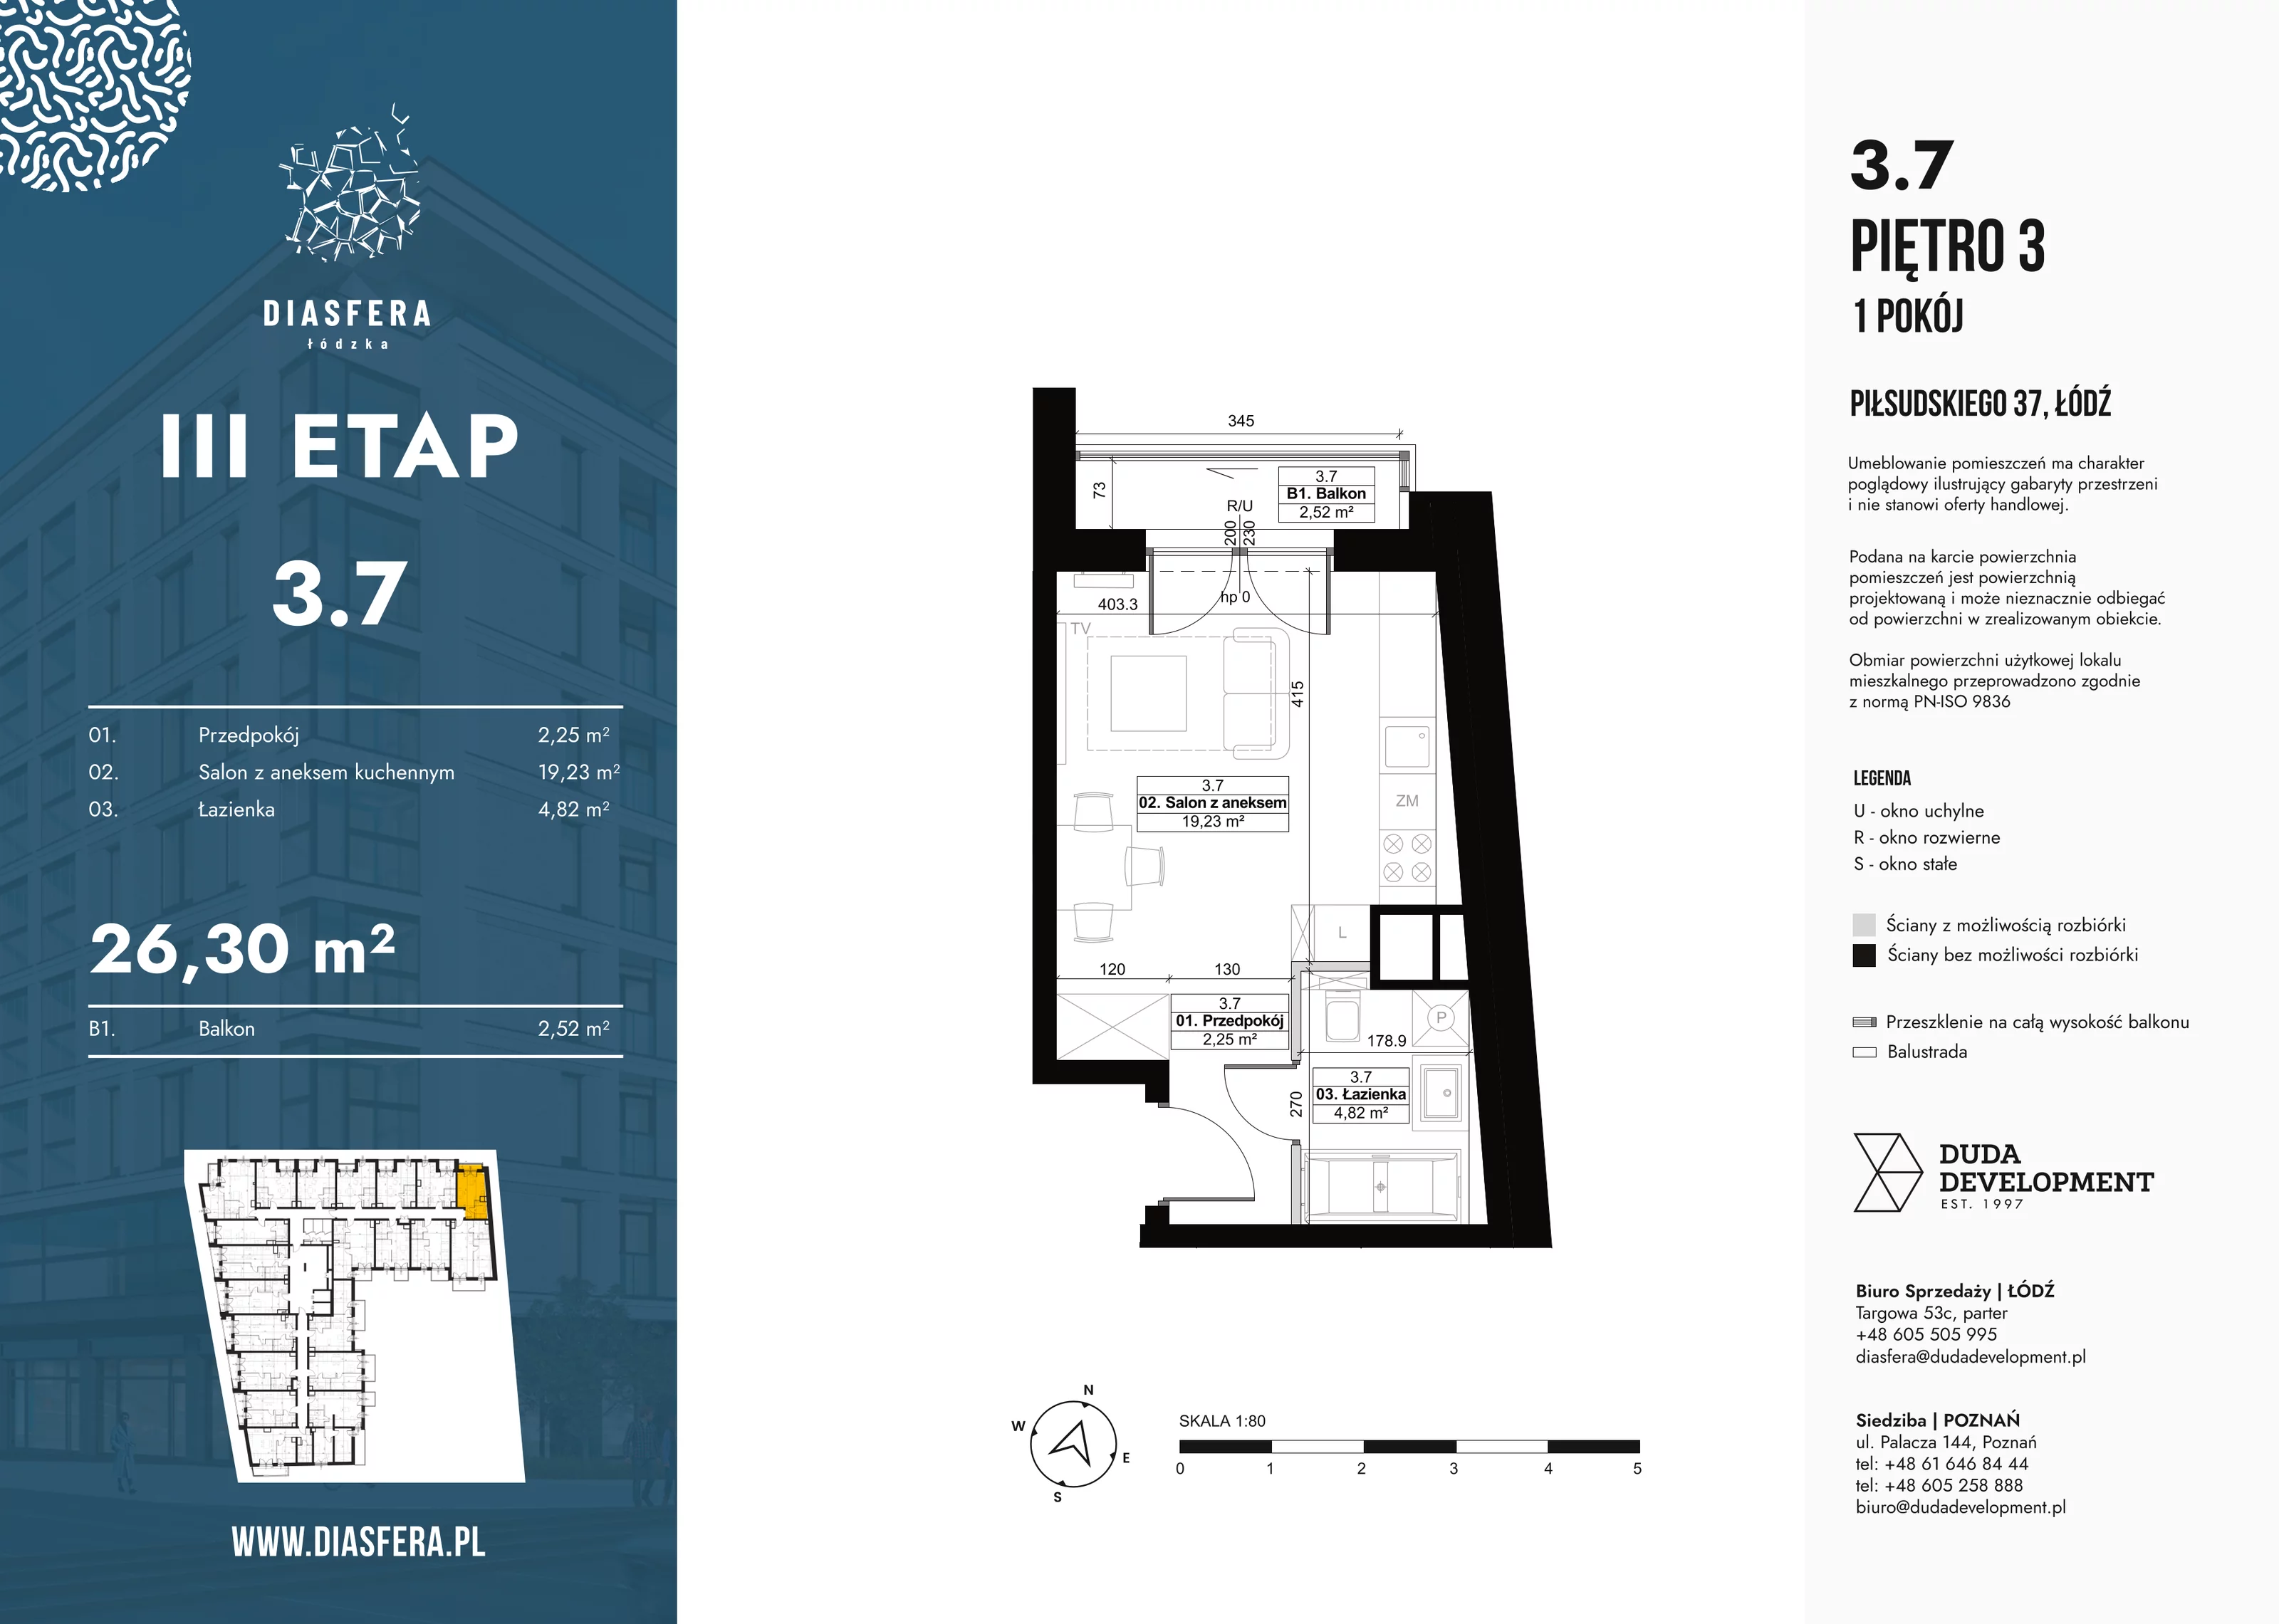 Mieszkanie 26,14 m², piętro 3, oferta nr 3_7, Diasfera III, Łódź, Śródmieście, al. Piłsudskiego 37